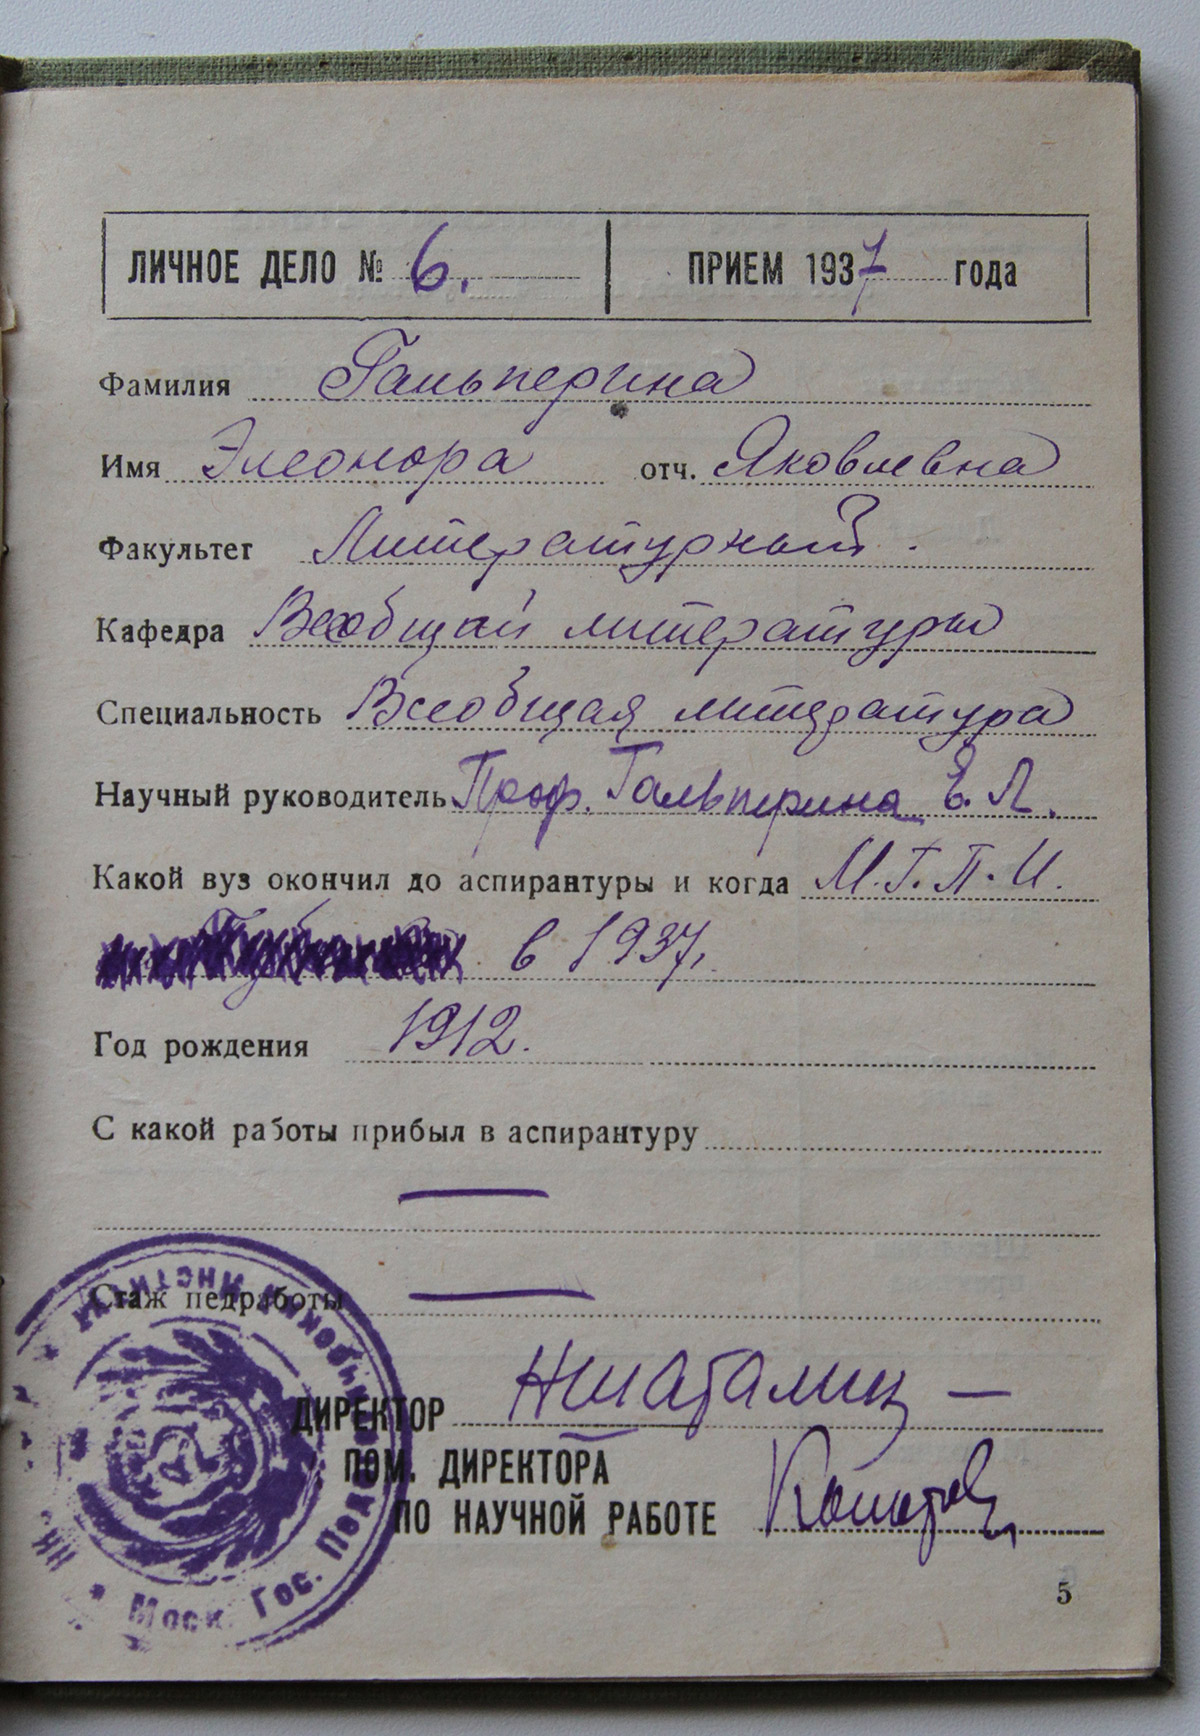 Учётный журнал аспиранта. 1938-1939 гг.